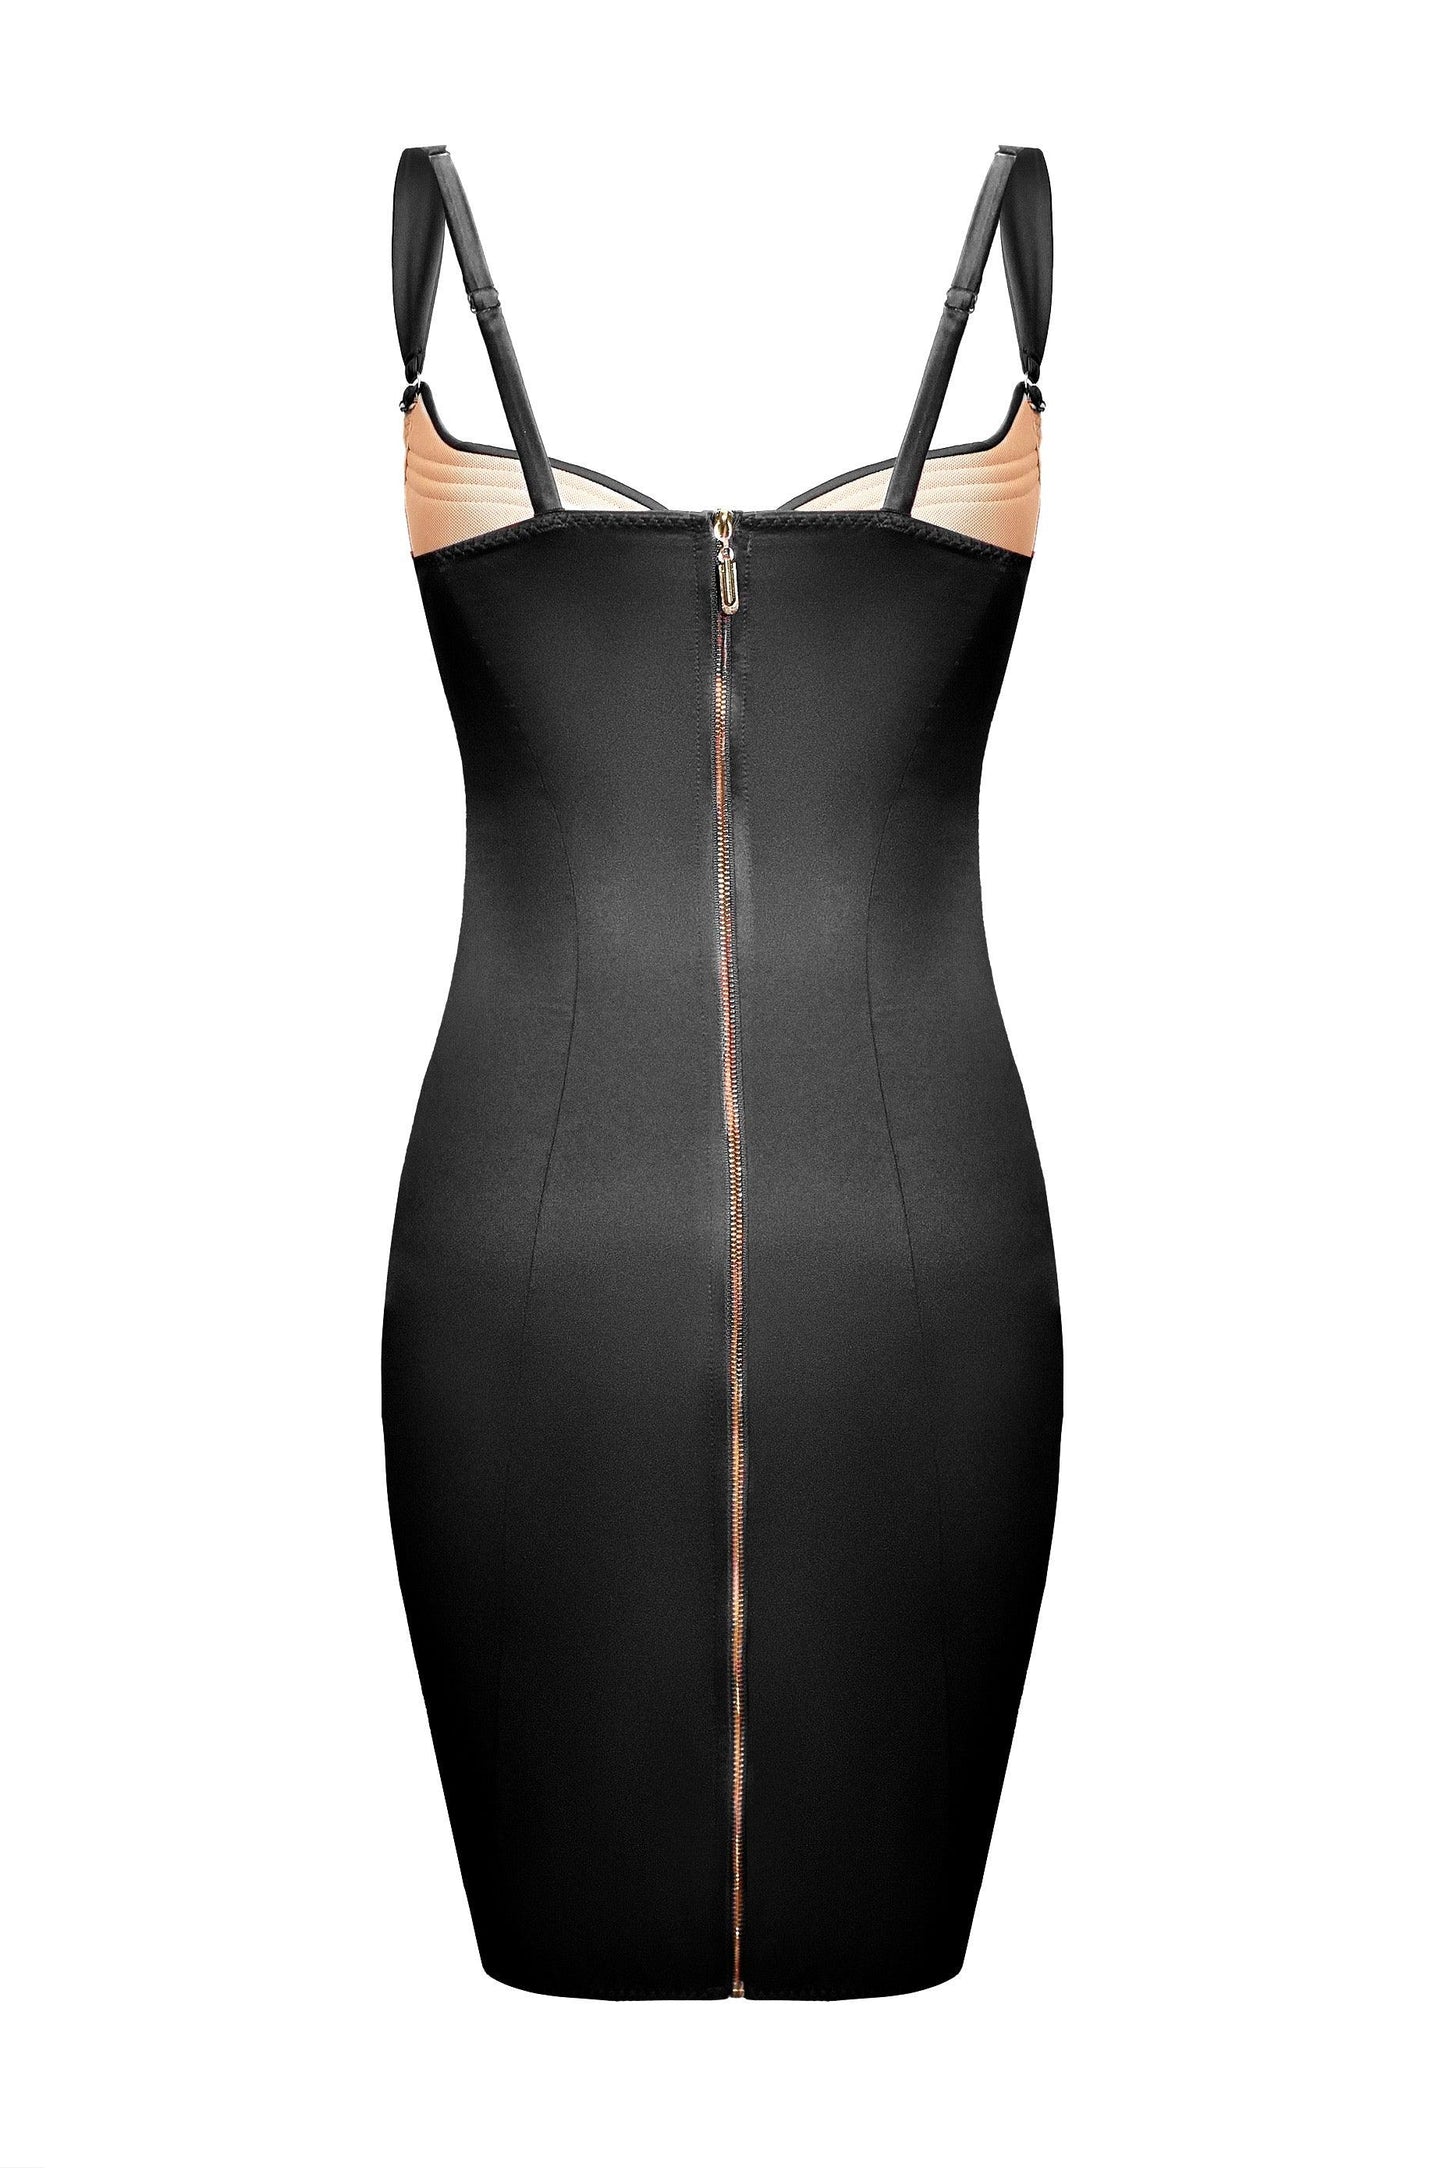 Cymothoe Black dress - yesUndress